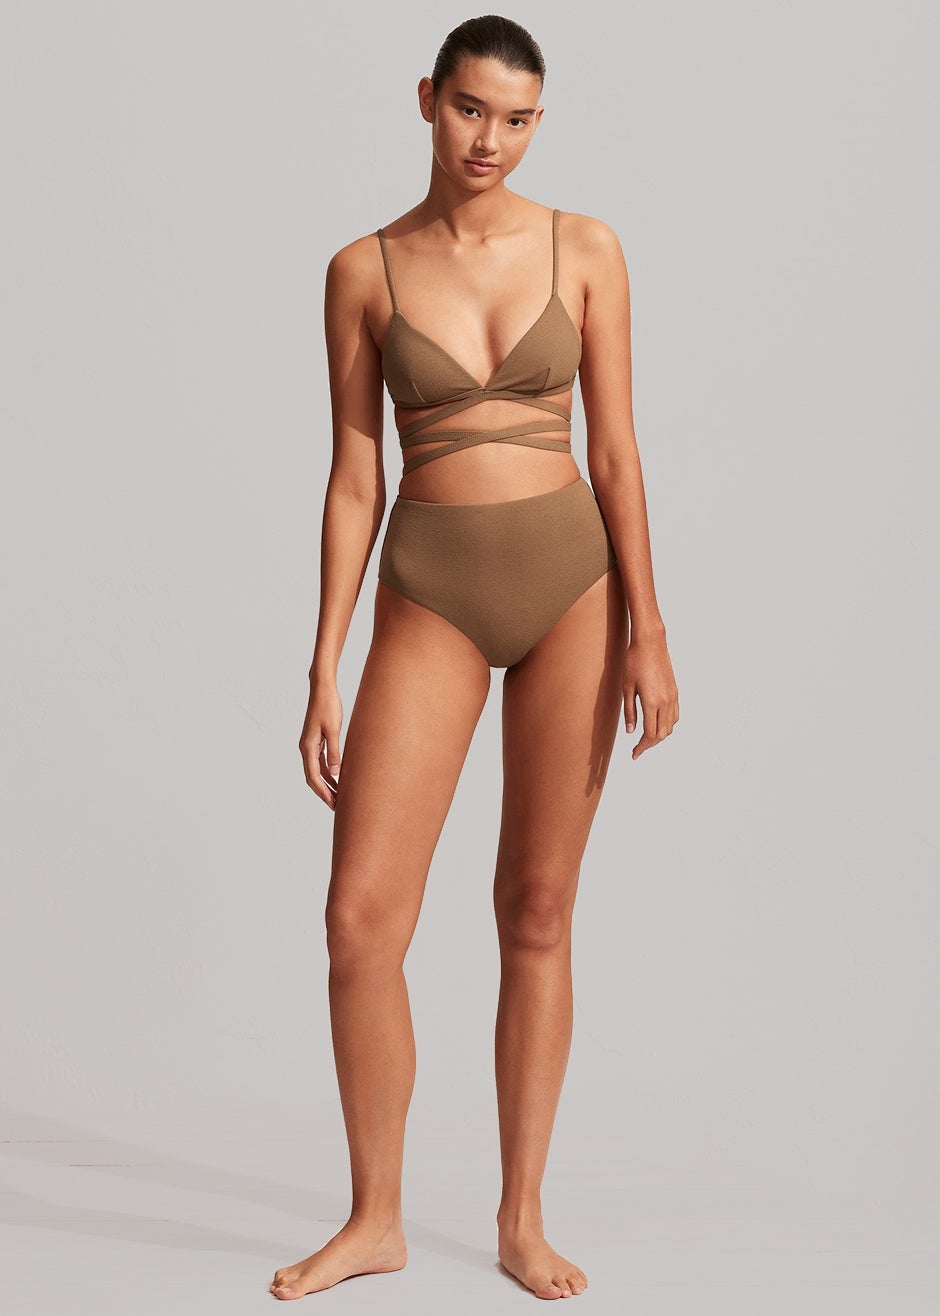 Matteau Wrap Triangle Bikini Top - Cinnamon Crinkle - 3